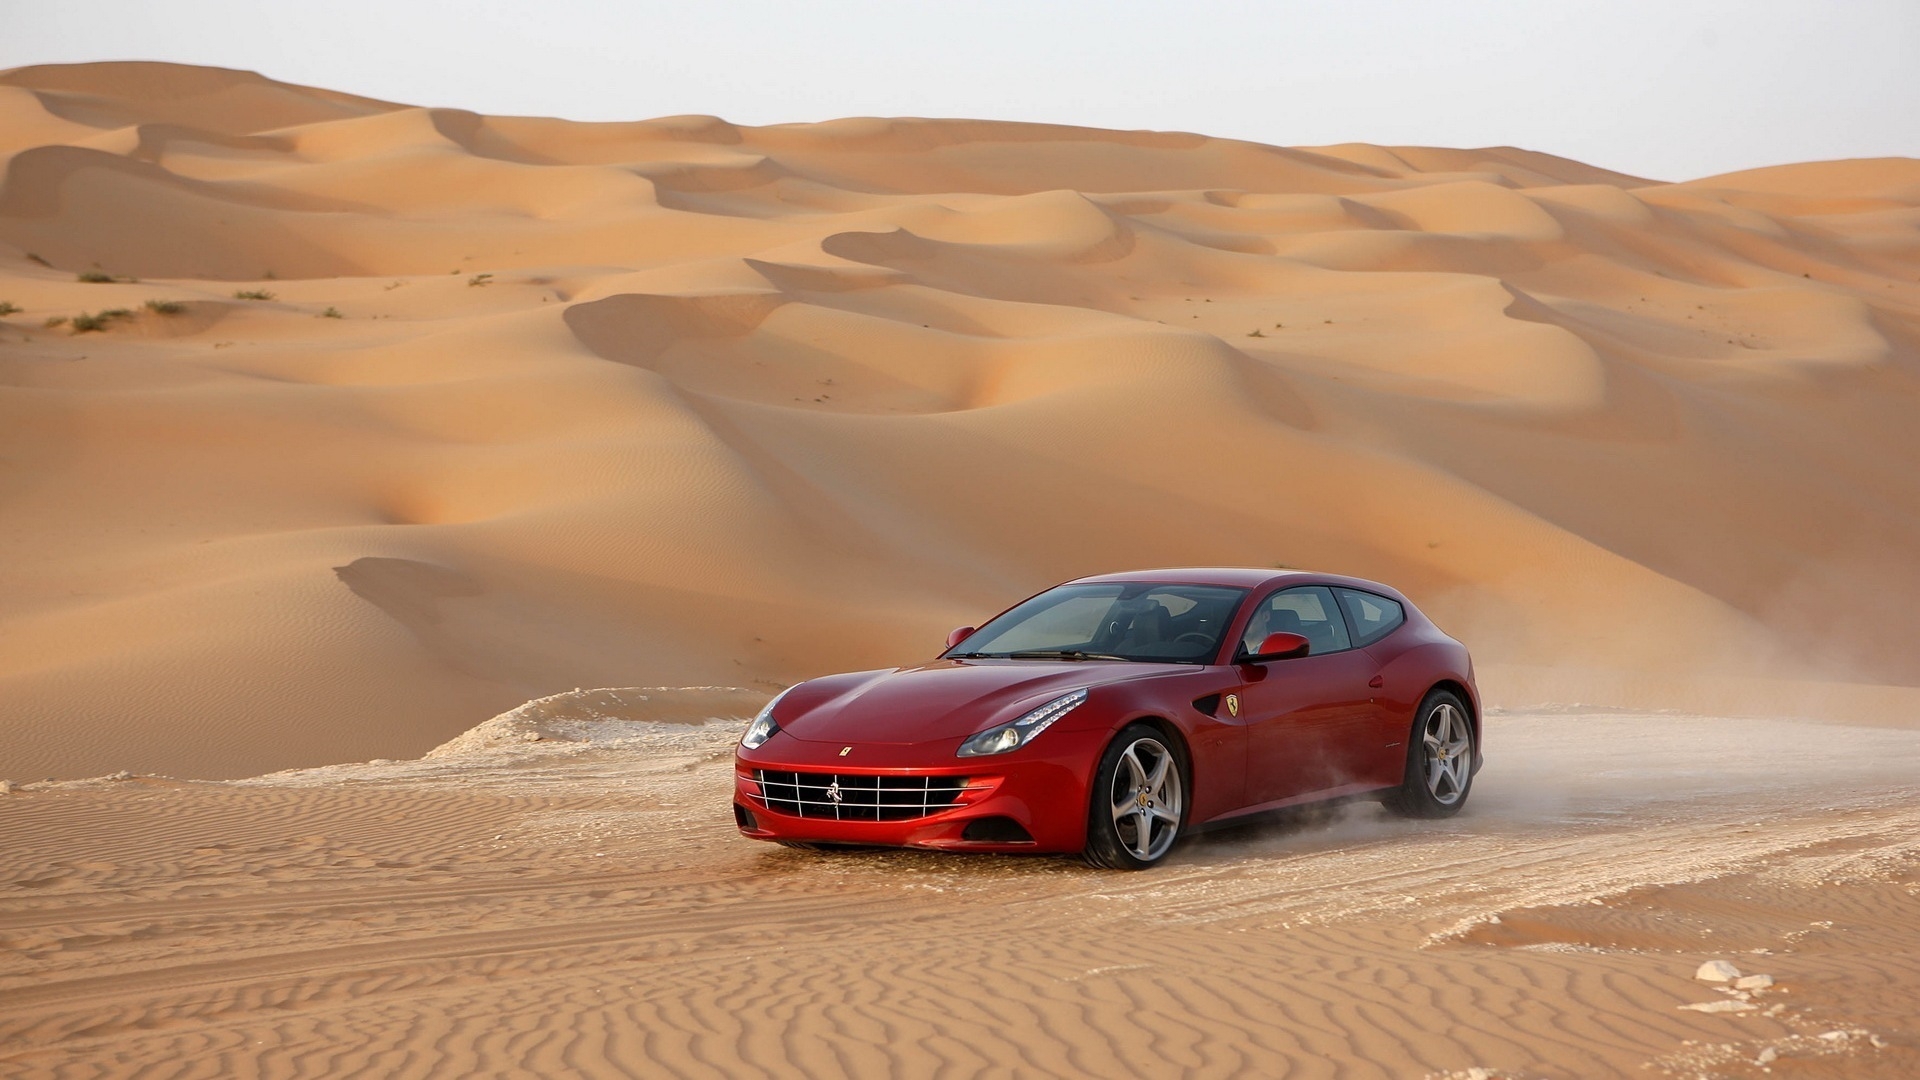 Скачать картинку Феррари (Ferrari), Машины, Транспорт в телефон бесплатно.